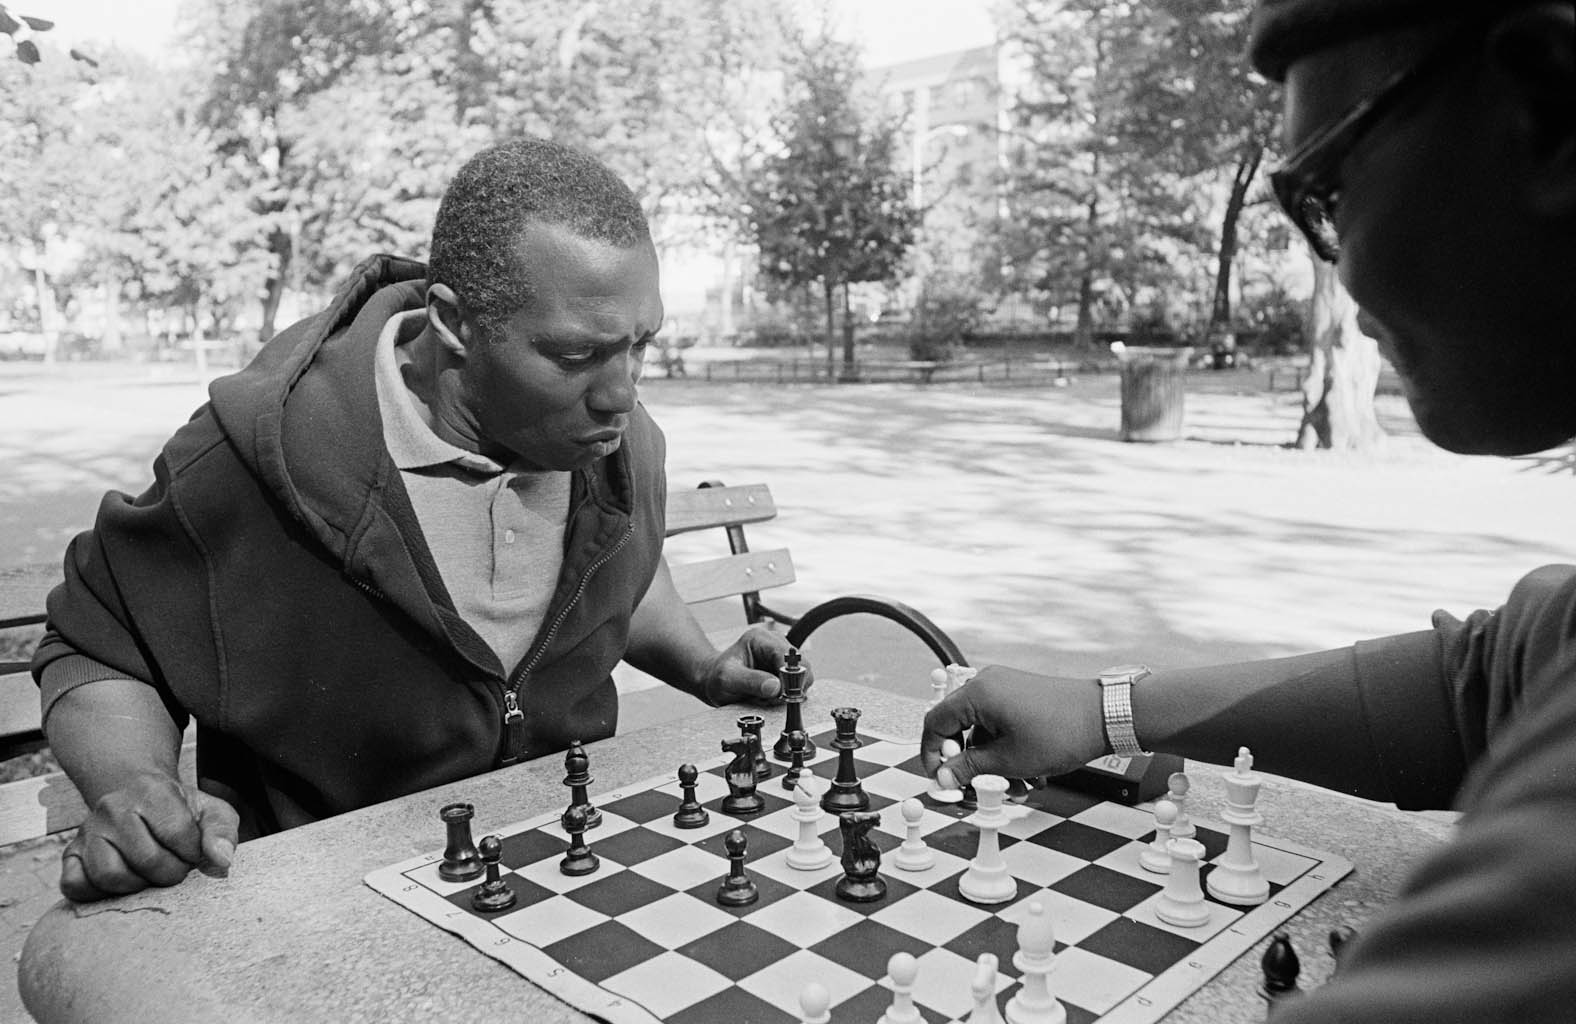 Chess is a game. Энтони Майлс шахматист. Бент Ларсен шахматист. Шахматисты. Шахматисты Африки.